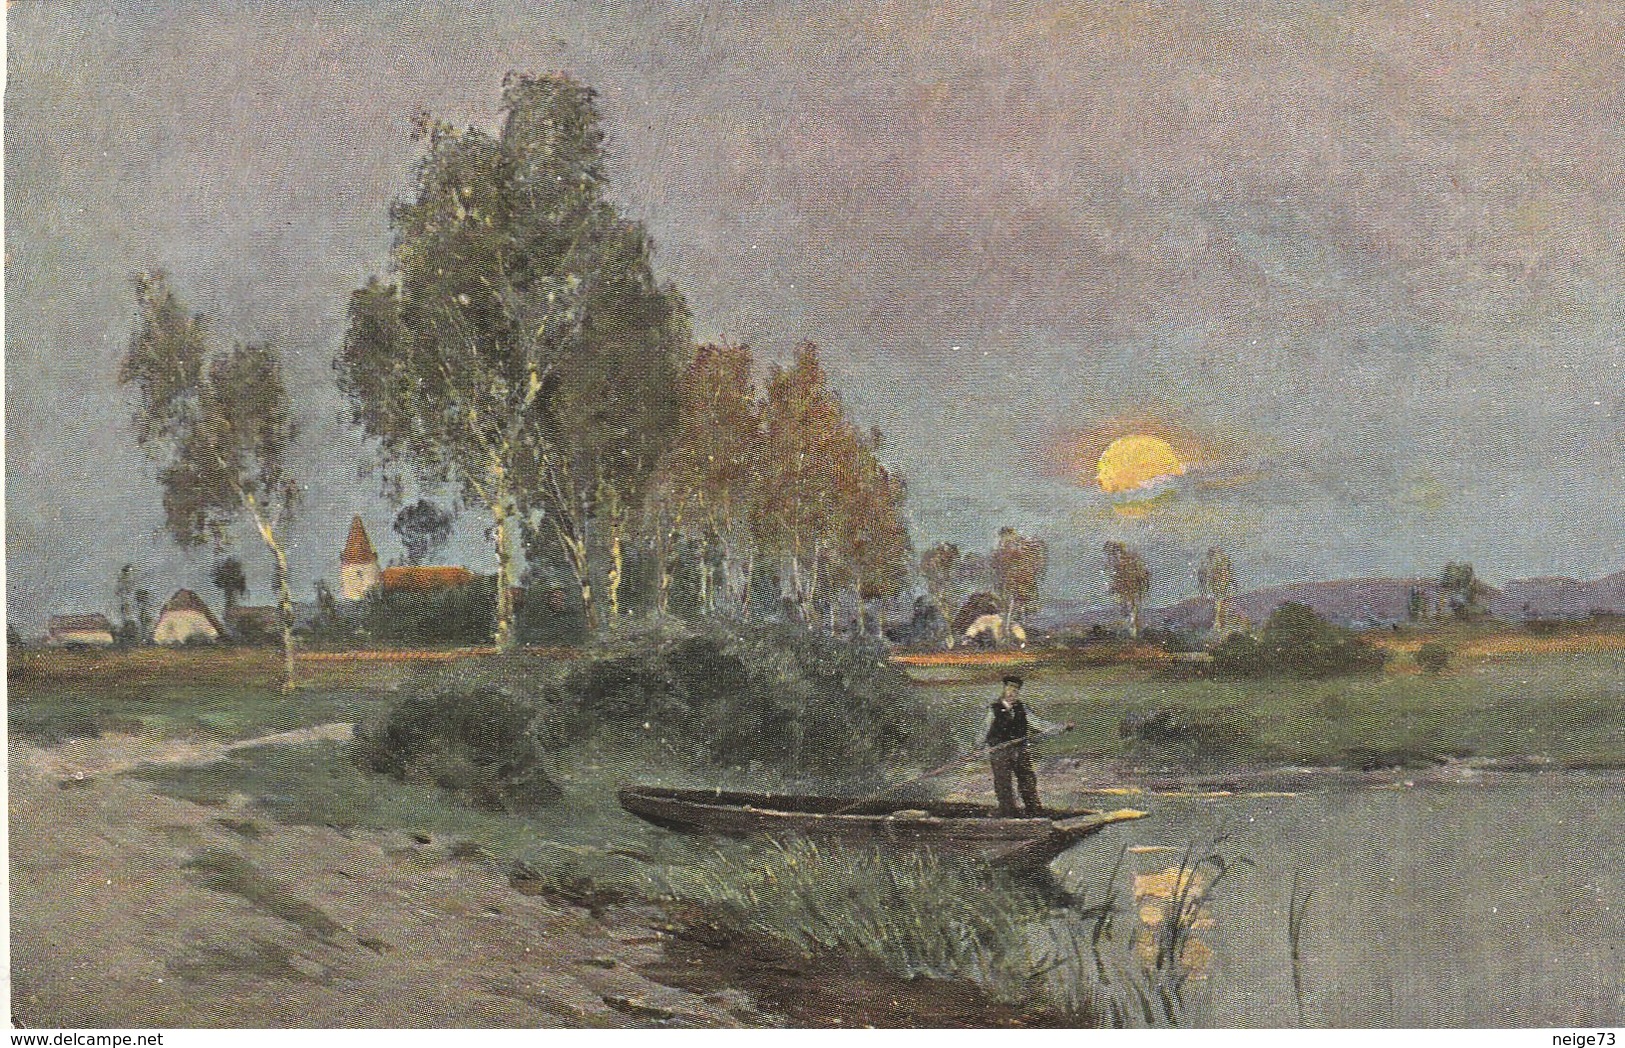 série de 6 cartes postales anciennes illustrées - paysages - tableaux - vers 1900